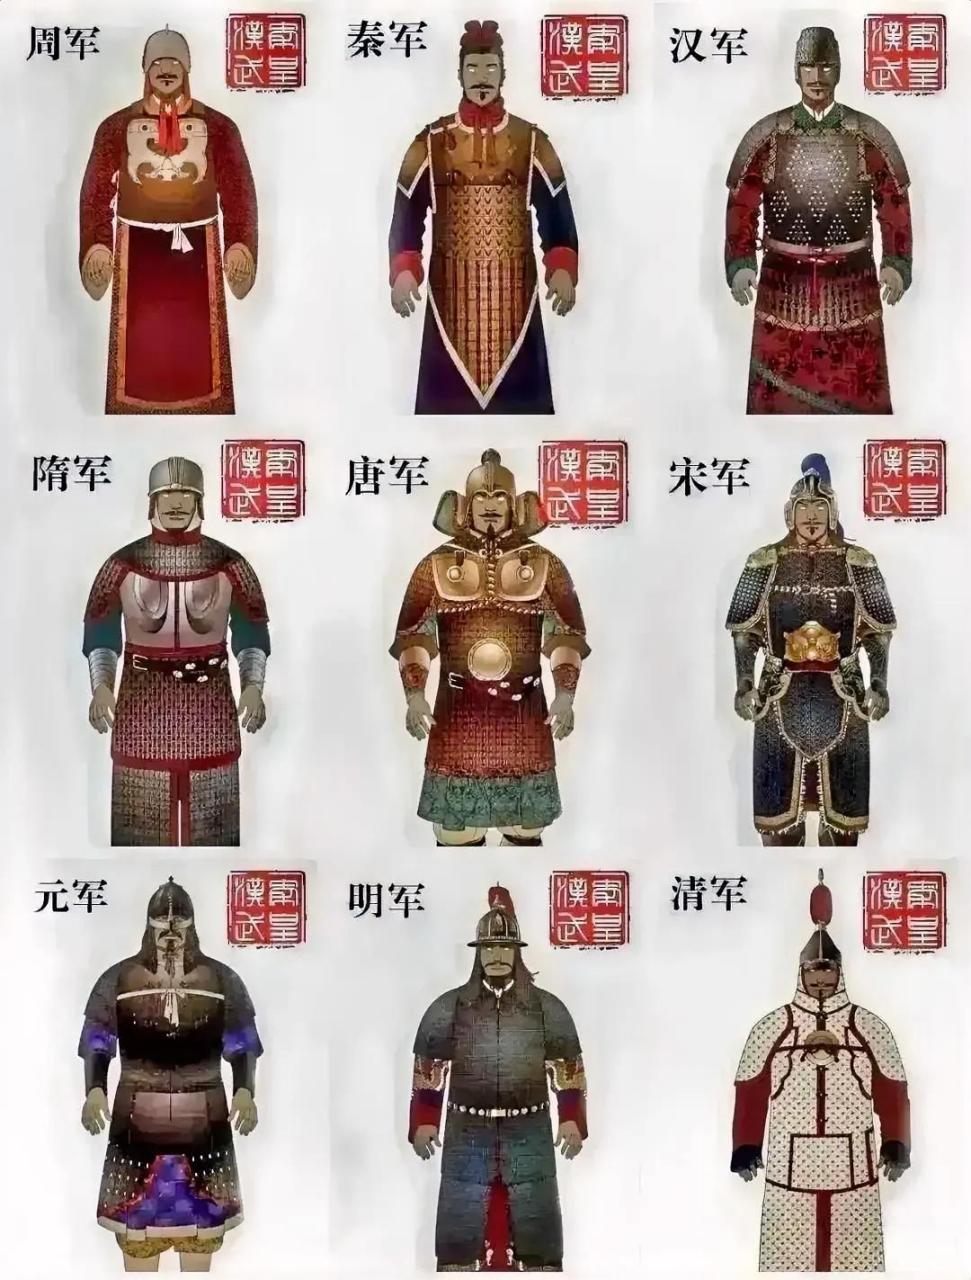 古代中国历朝将士盔甲一览!